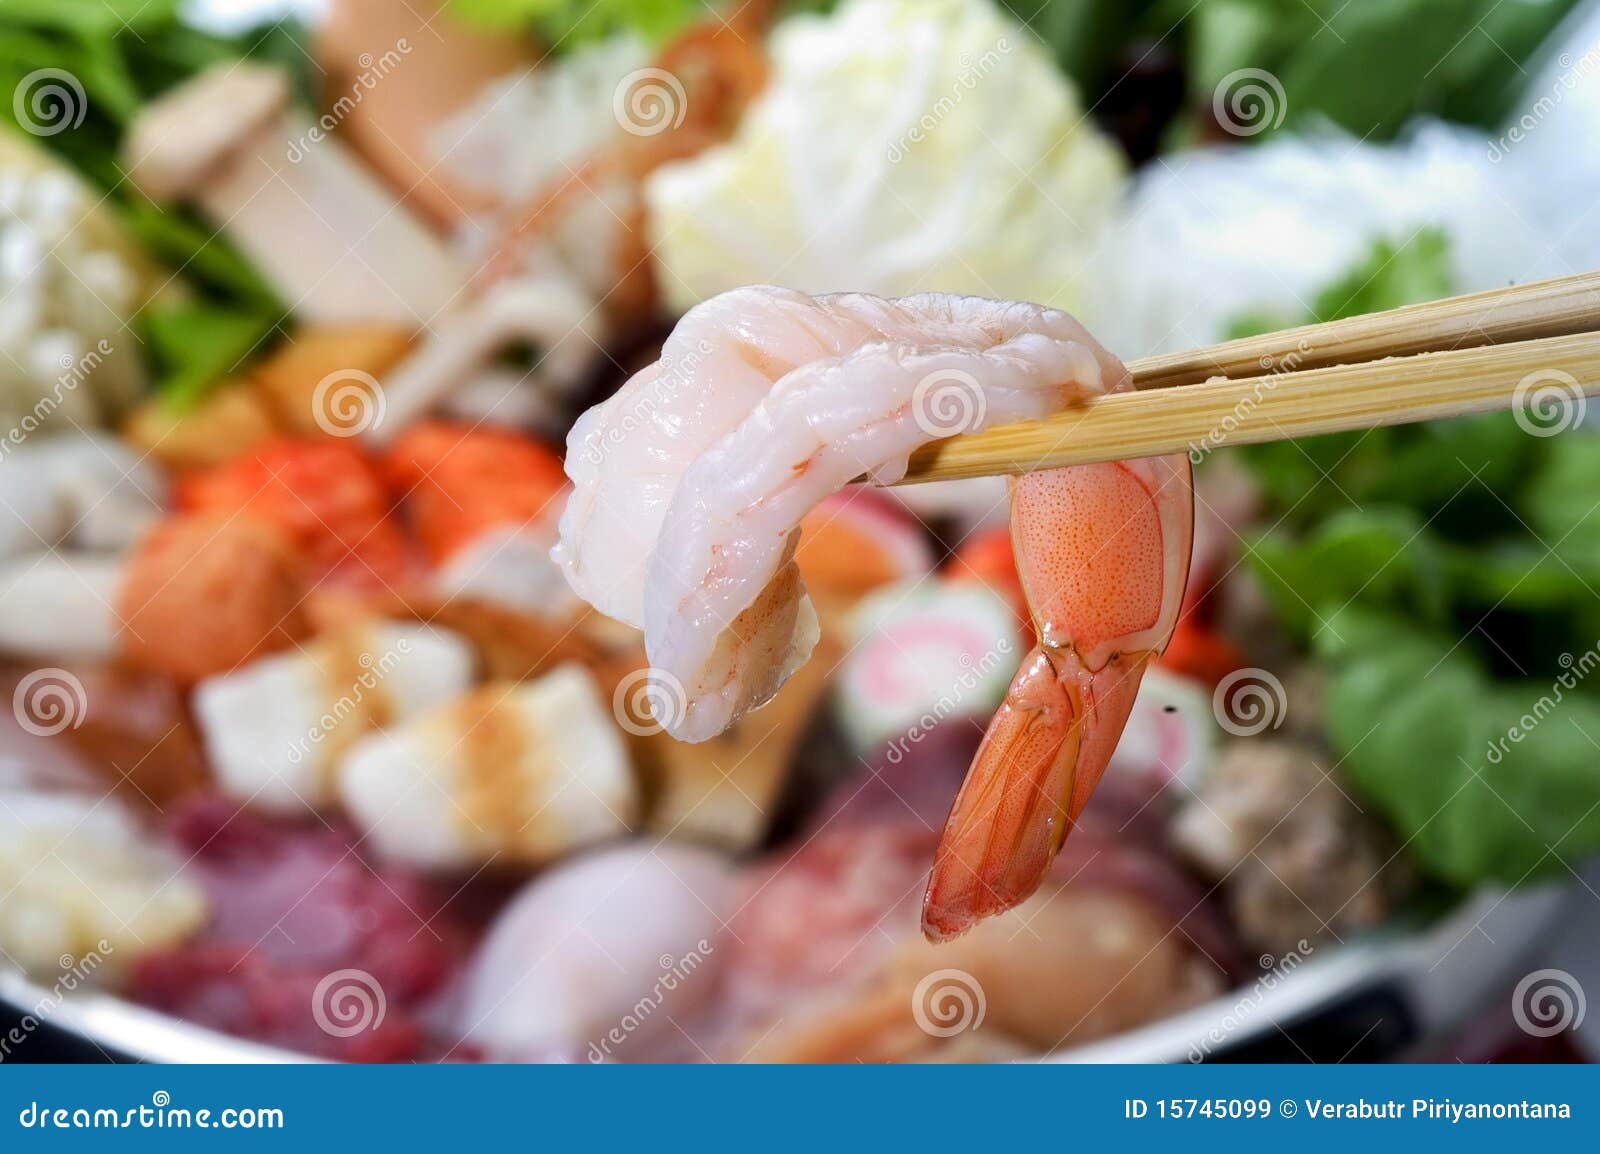 shrimp with chopsticks